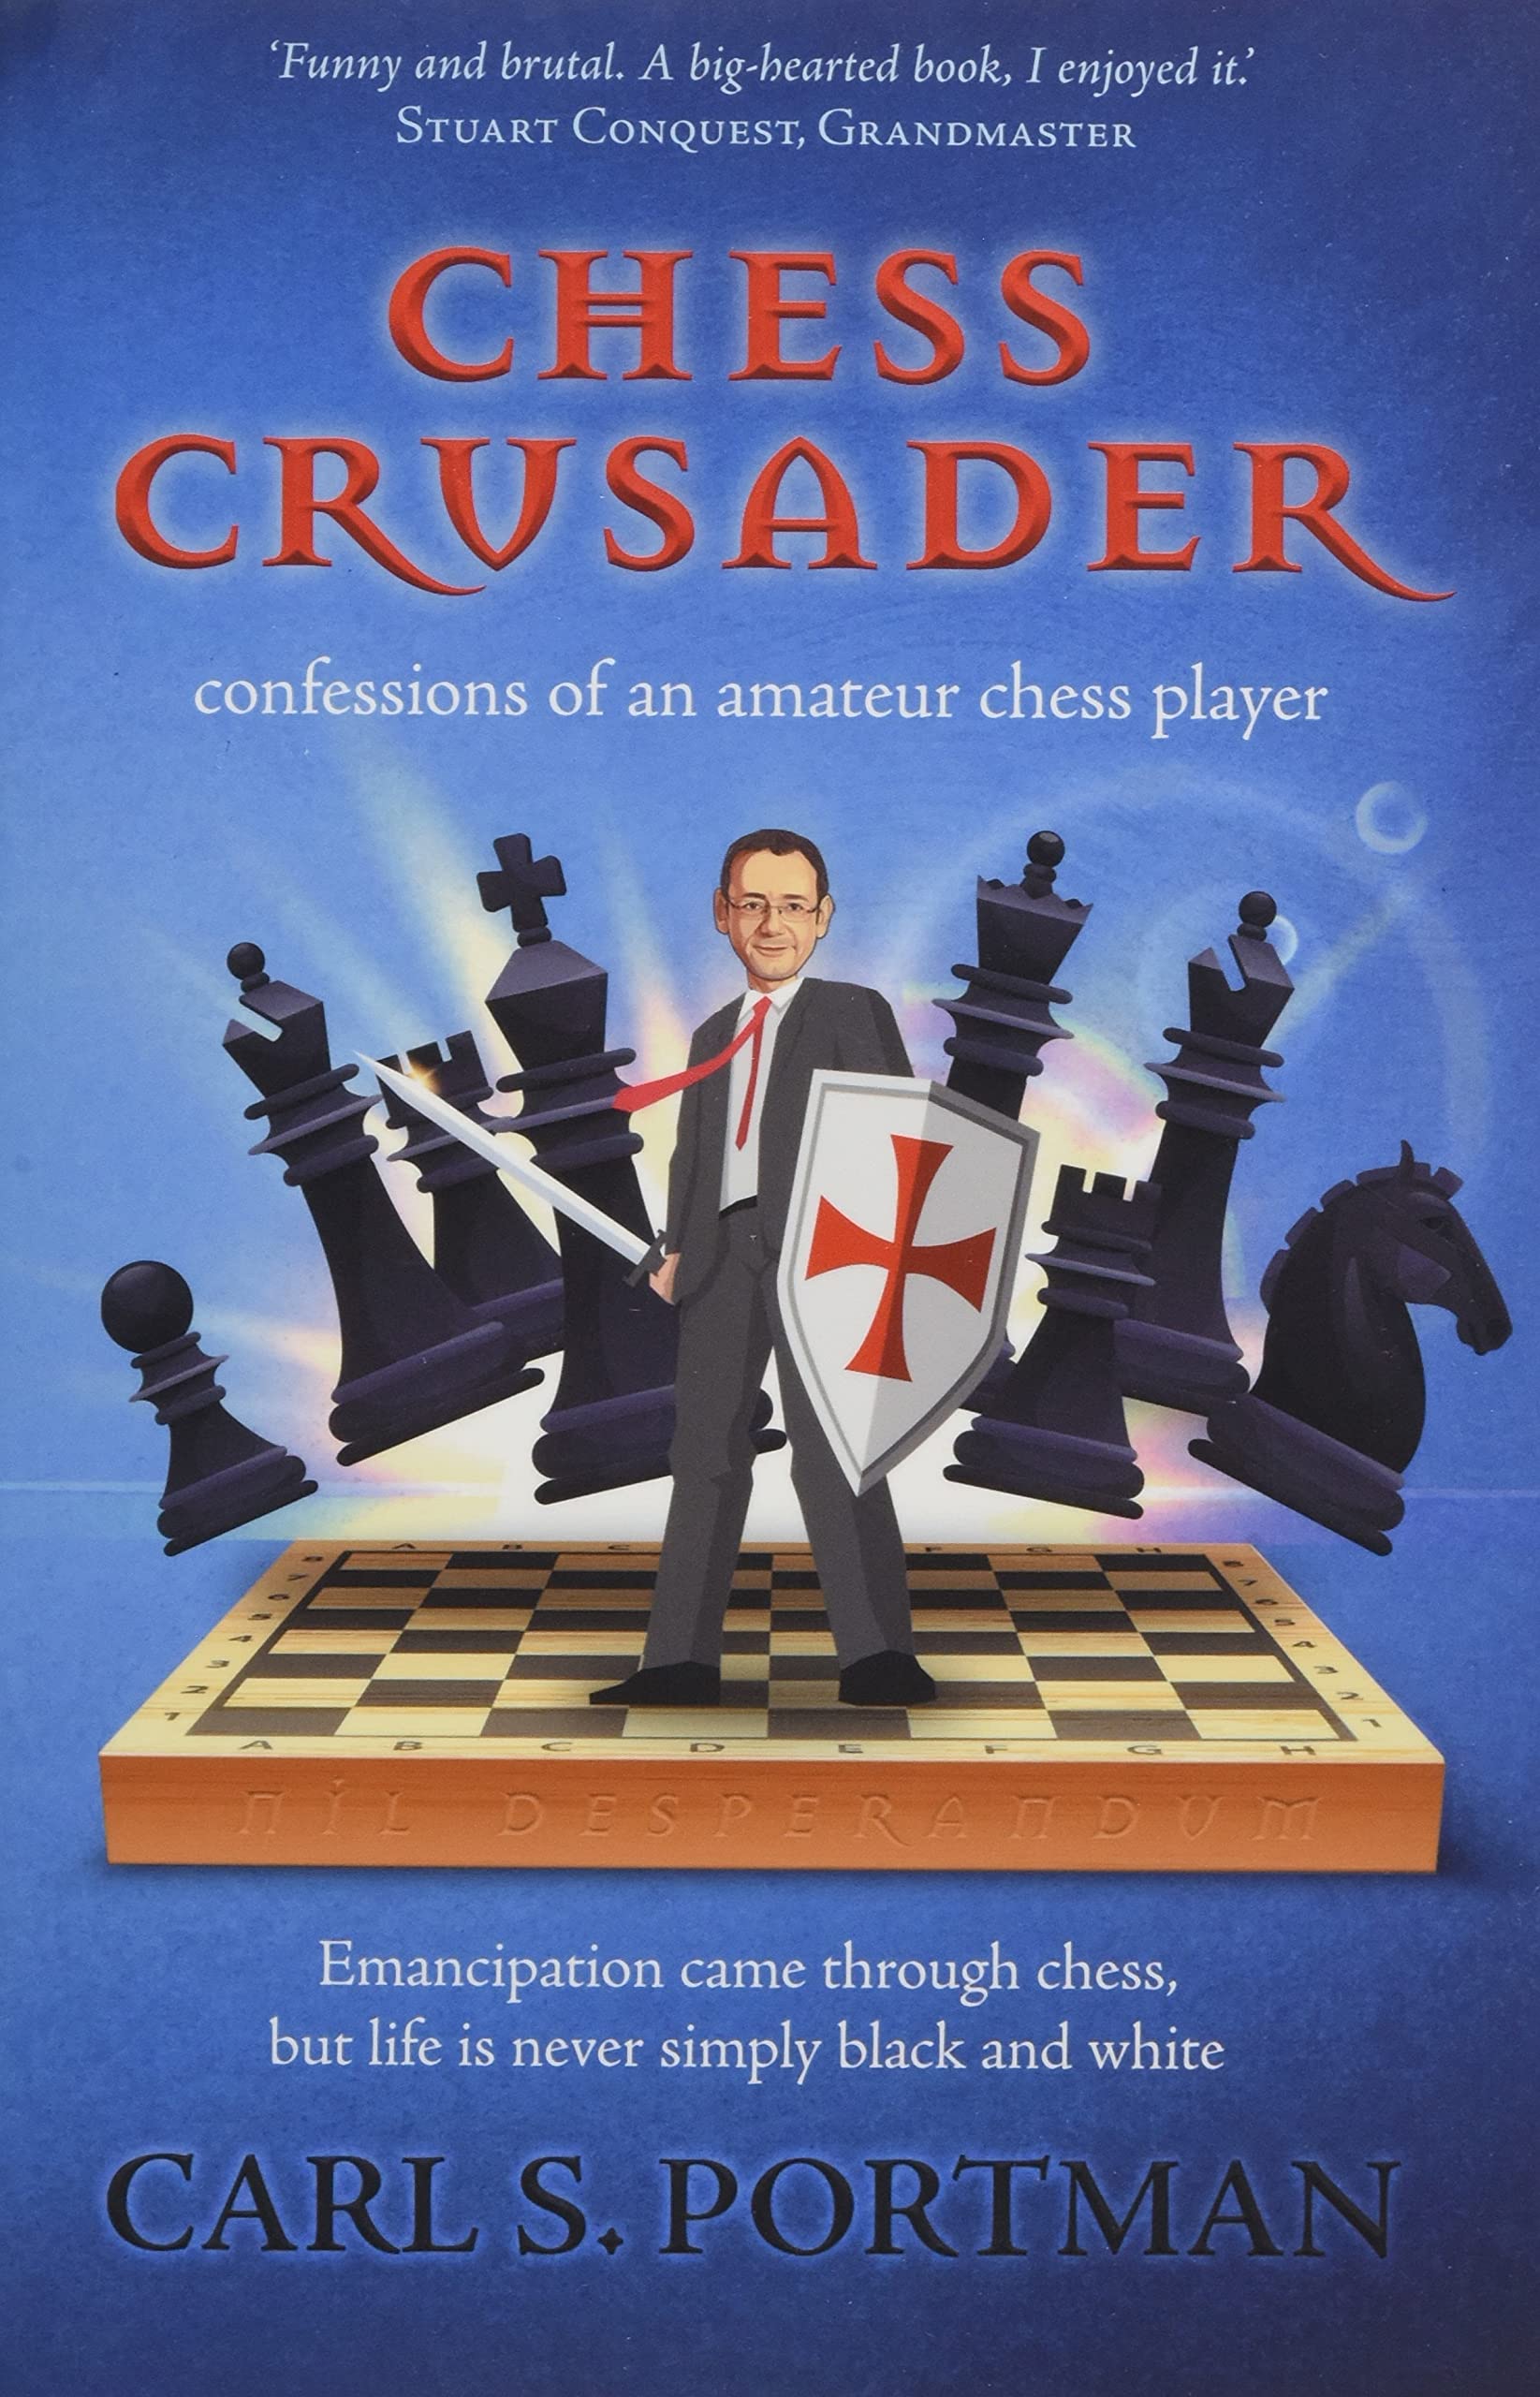 The Chess Crusader. Carl Portman, The Conrad Press, 22nd July 2021, ISBN-13 ‏ : ‎ 978-1913567866